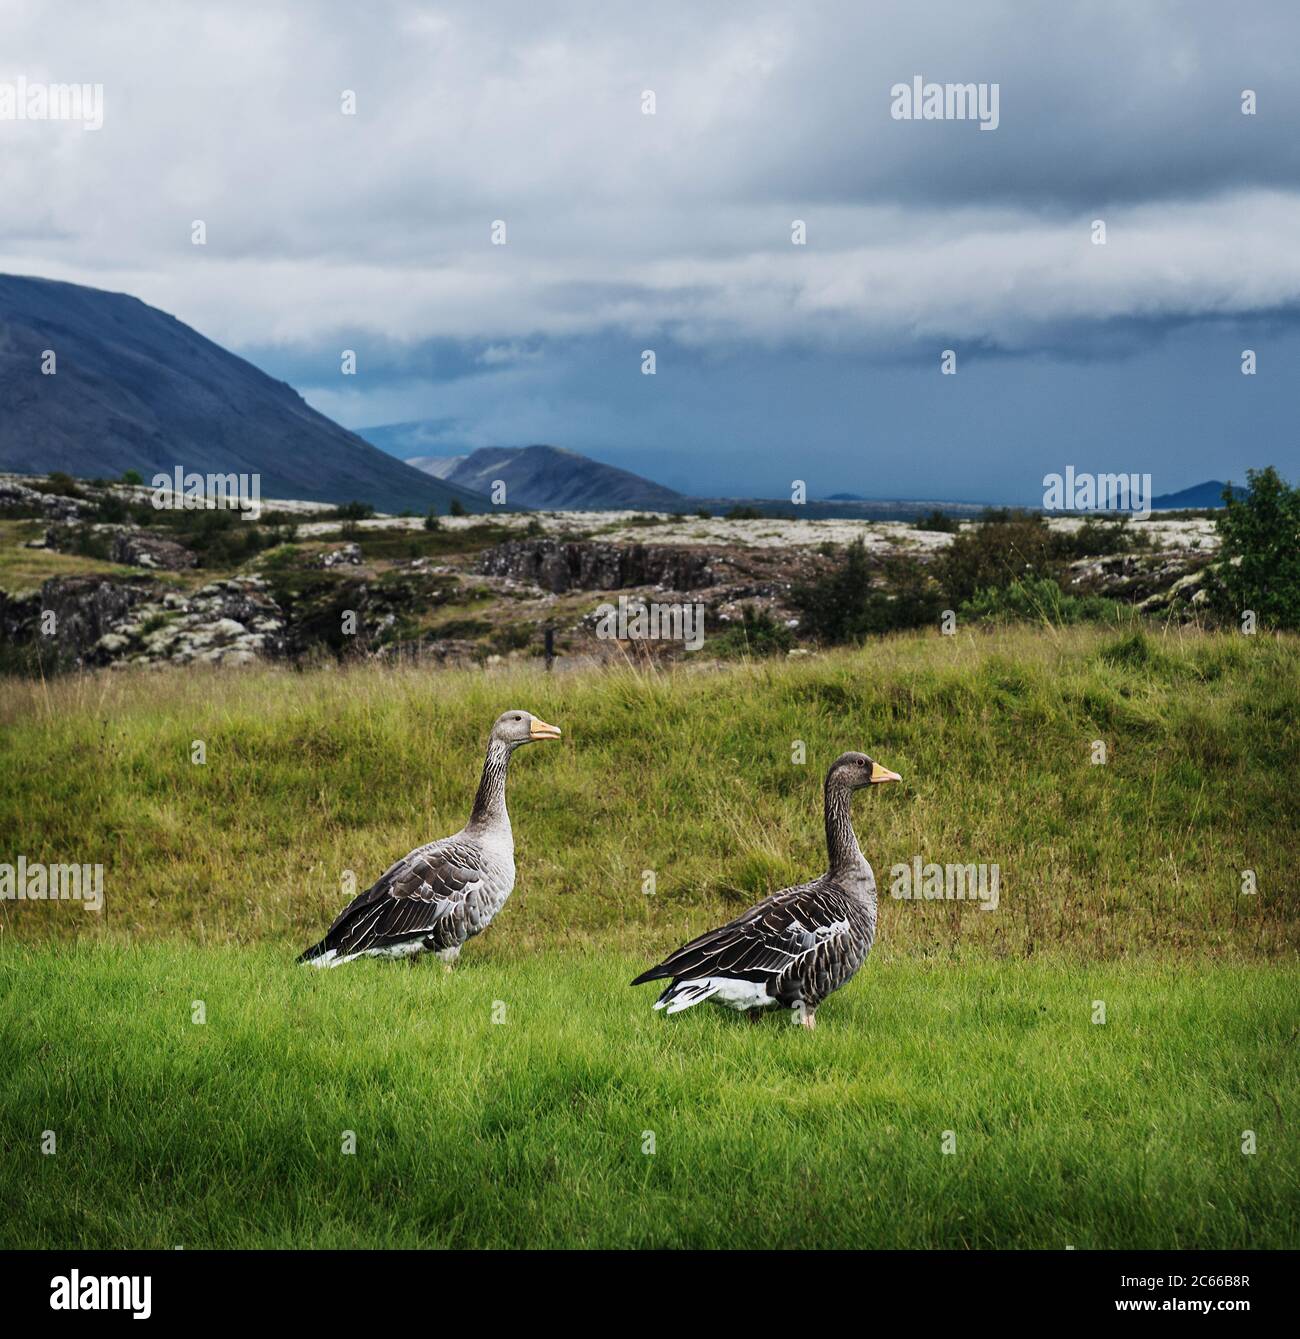 Canards sauvages sur une colline dans le cercle d'or, sud de l'Islande, Islande, Scandinavie, Europe Banque D'Images